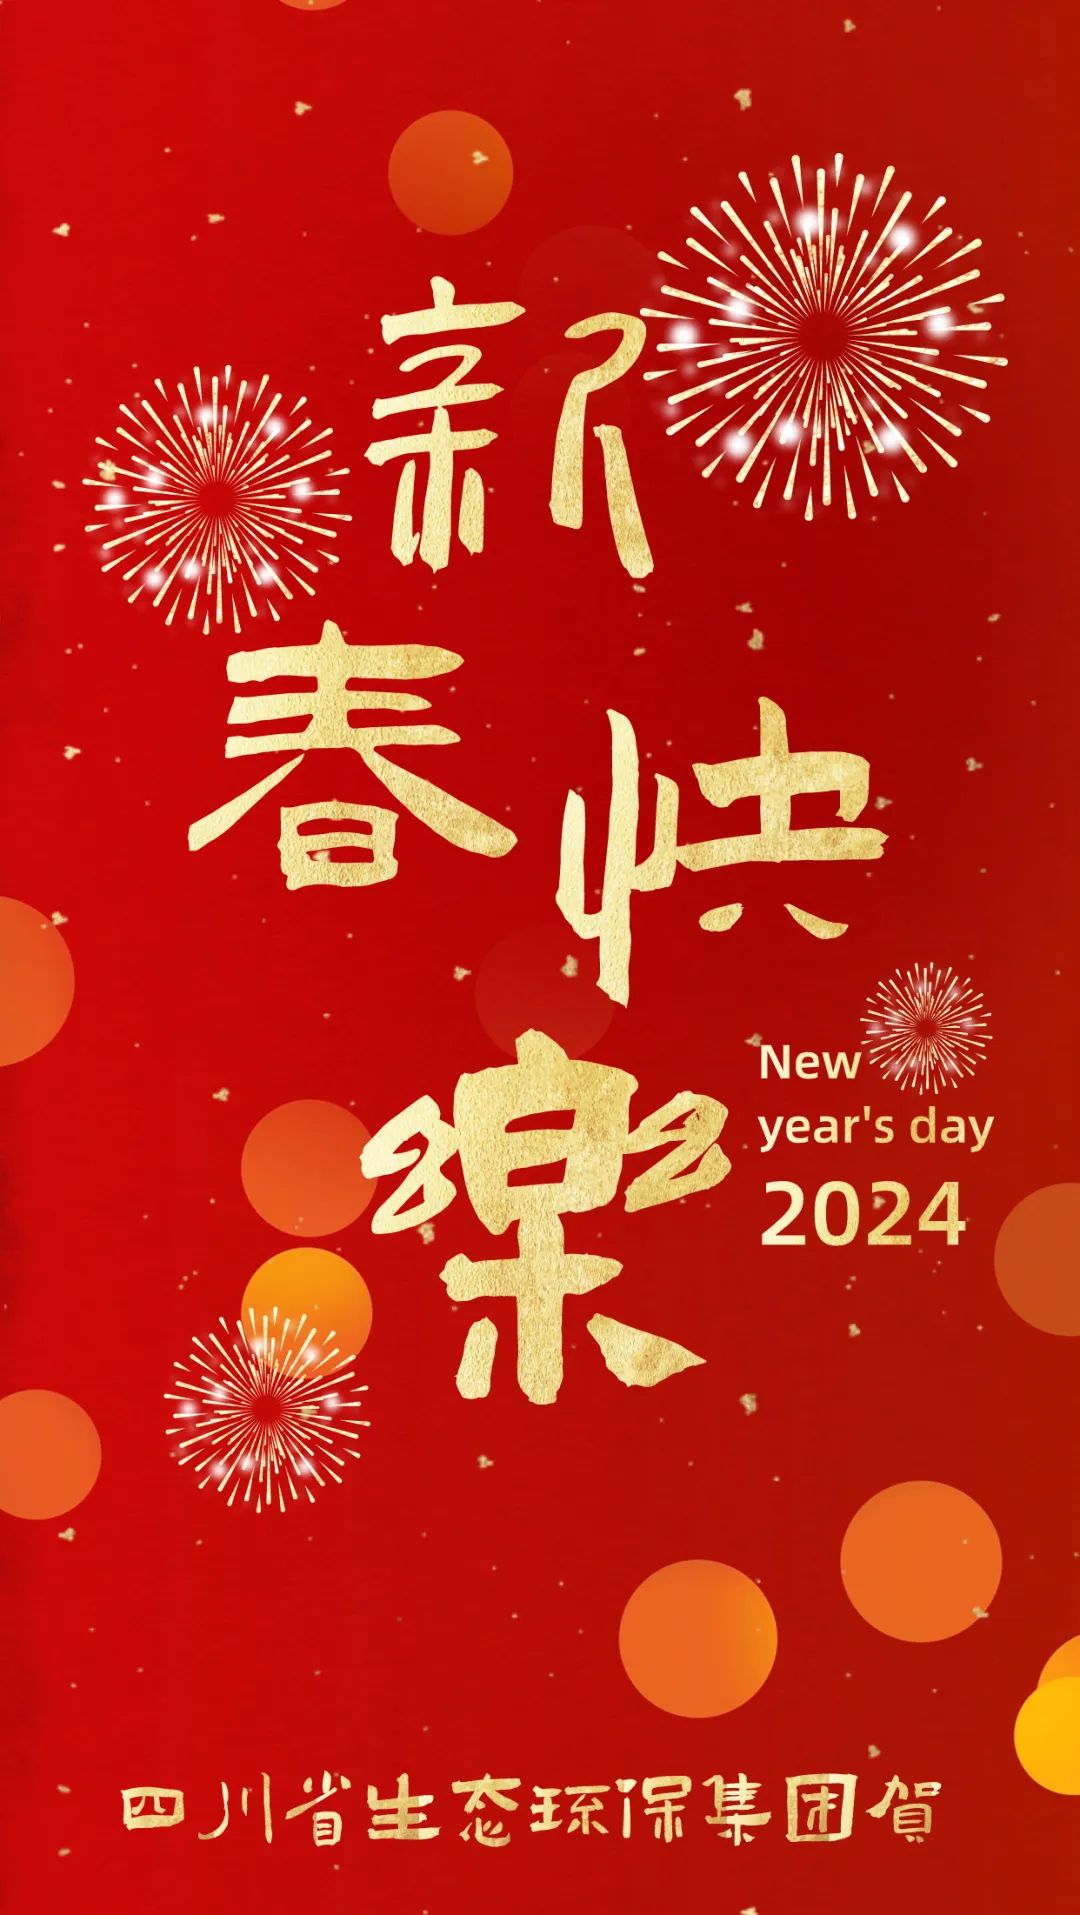 四川省生态环保集团恭祝大家甲辰龙年新春快乐